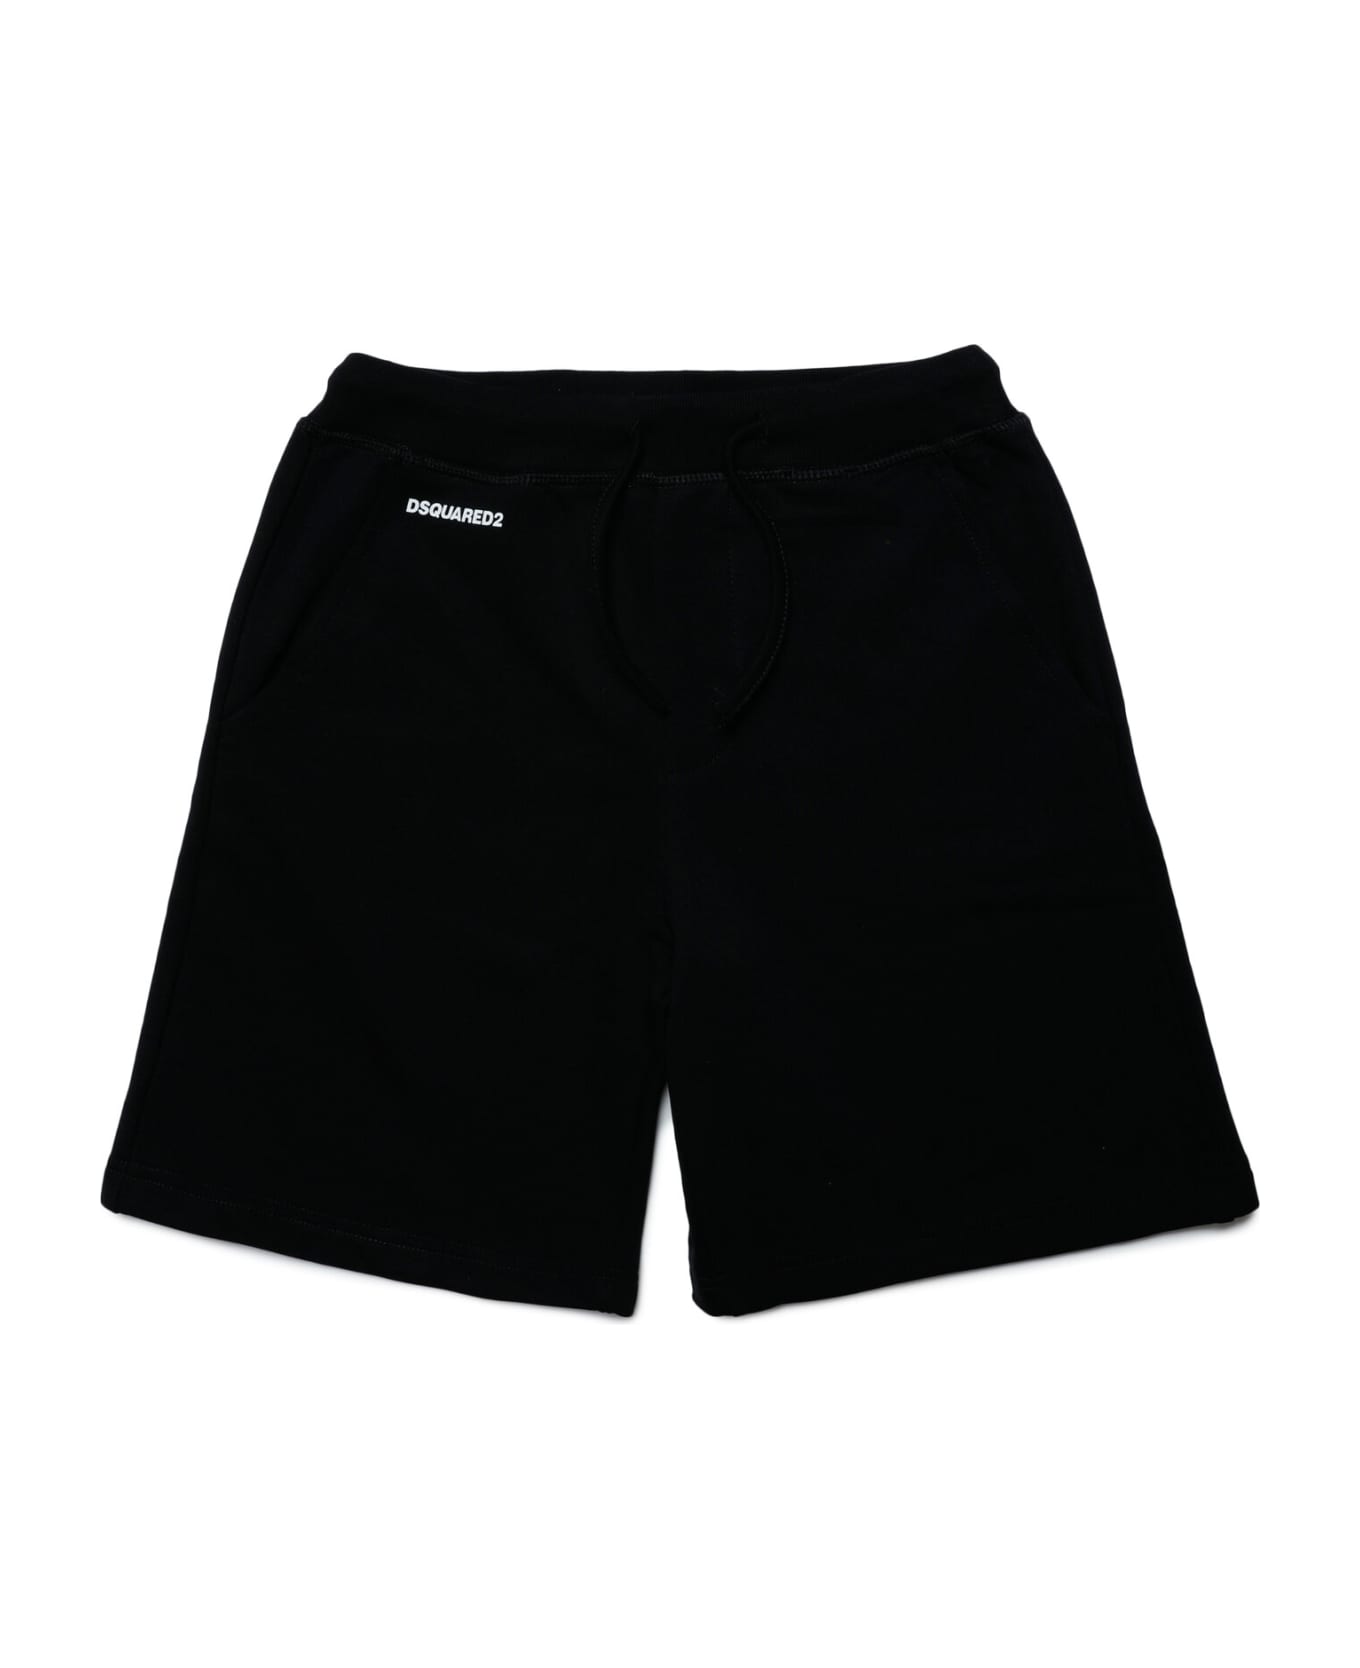 Dsquared2 D2p548u Over Shorts Dsquared Black Basic Sport Edtn 07 Shorts - Black